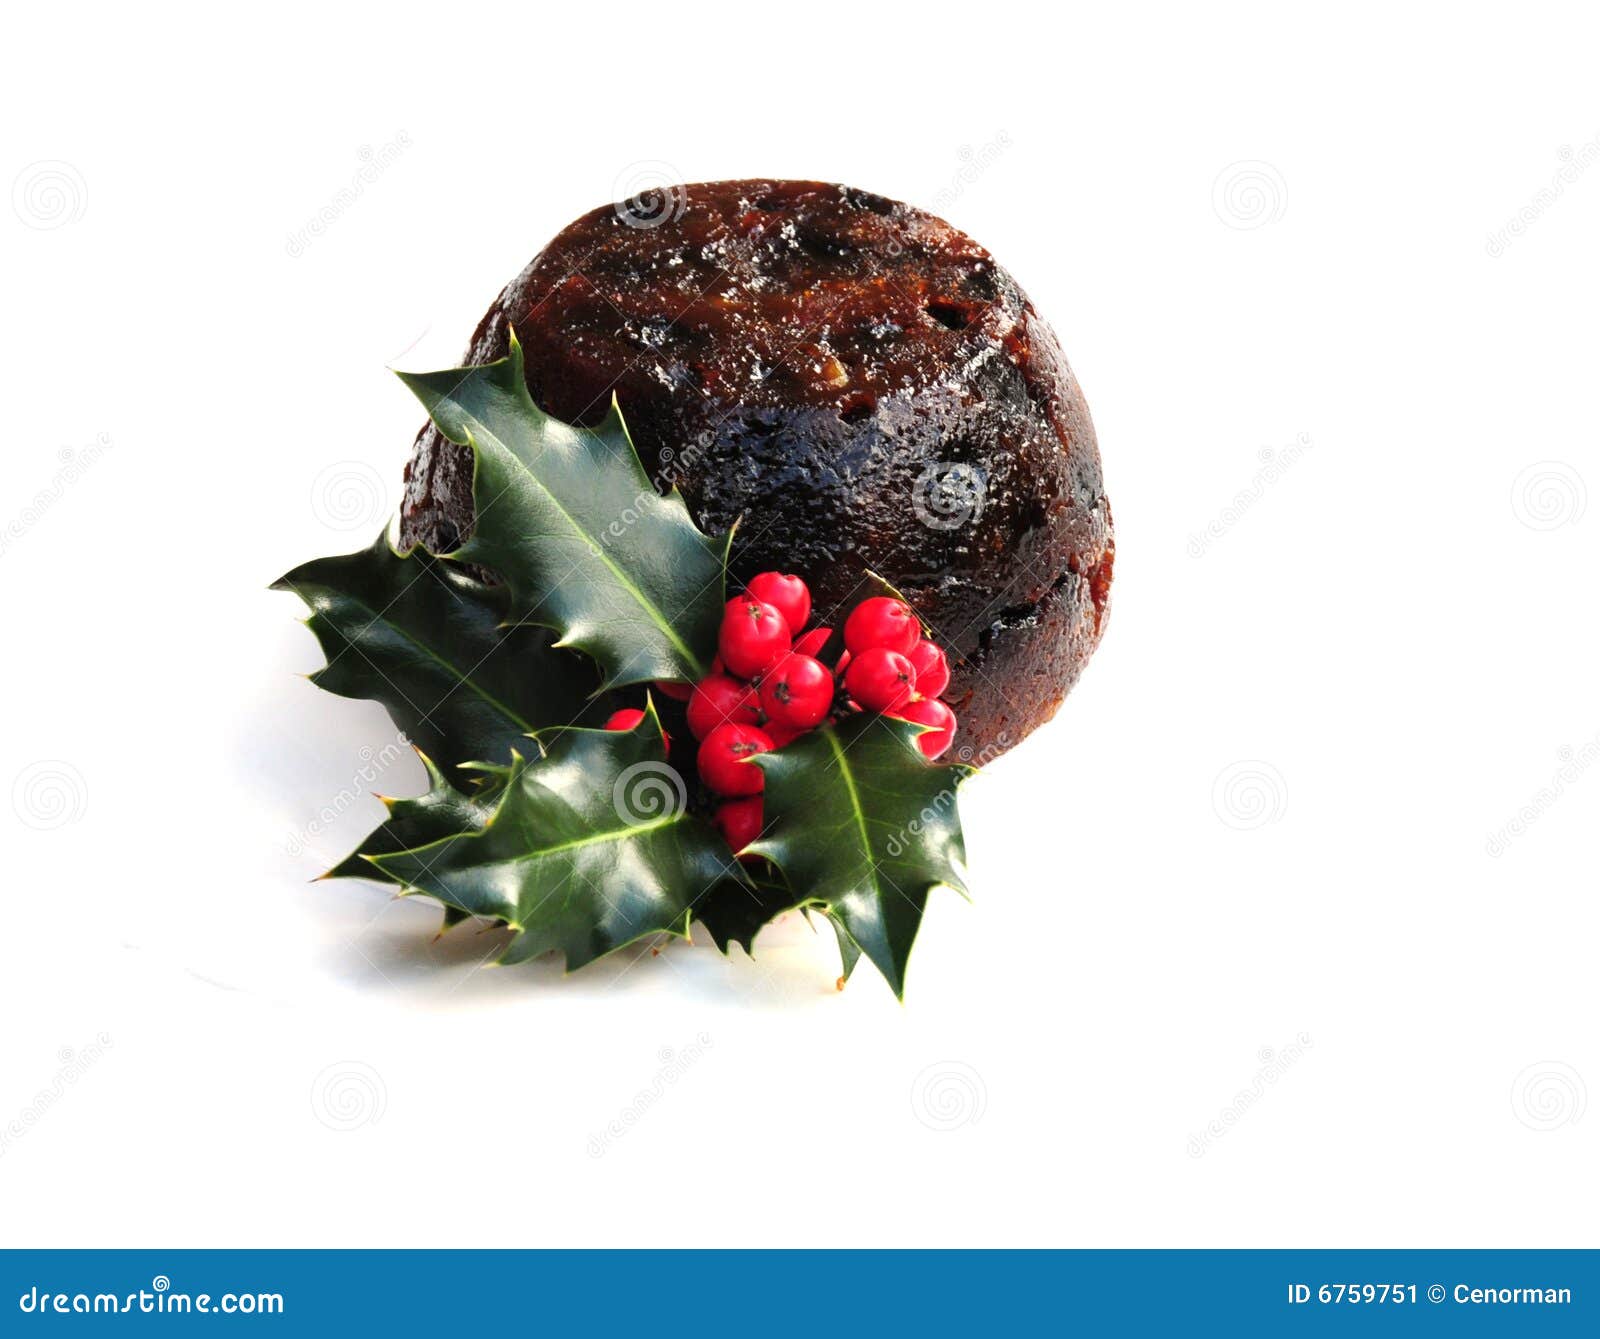 英国最流行的圣诞布丁，坚果满满好吃到爆！ - 知乎